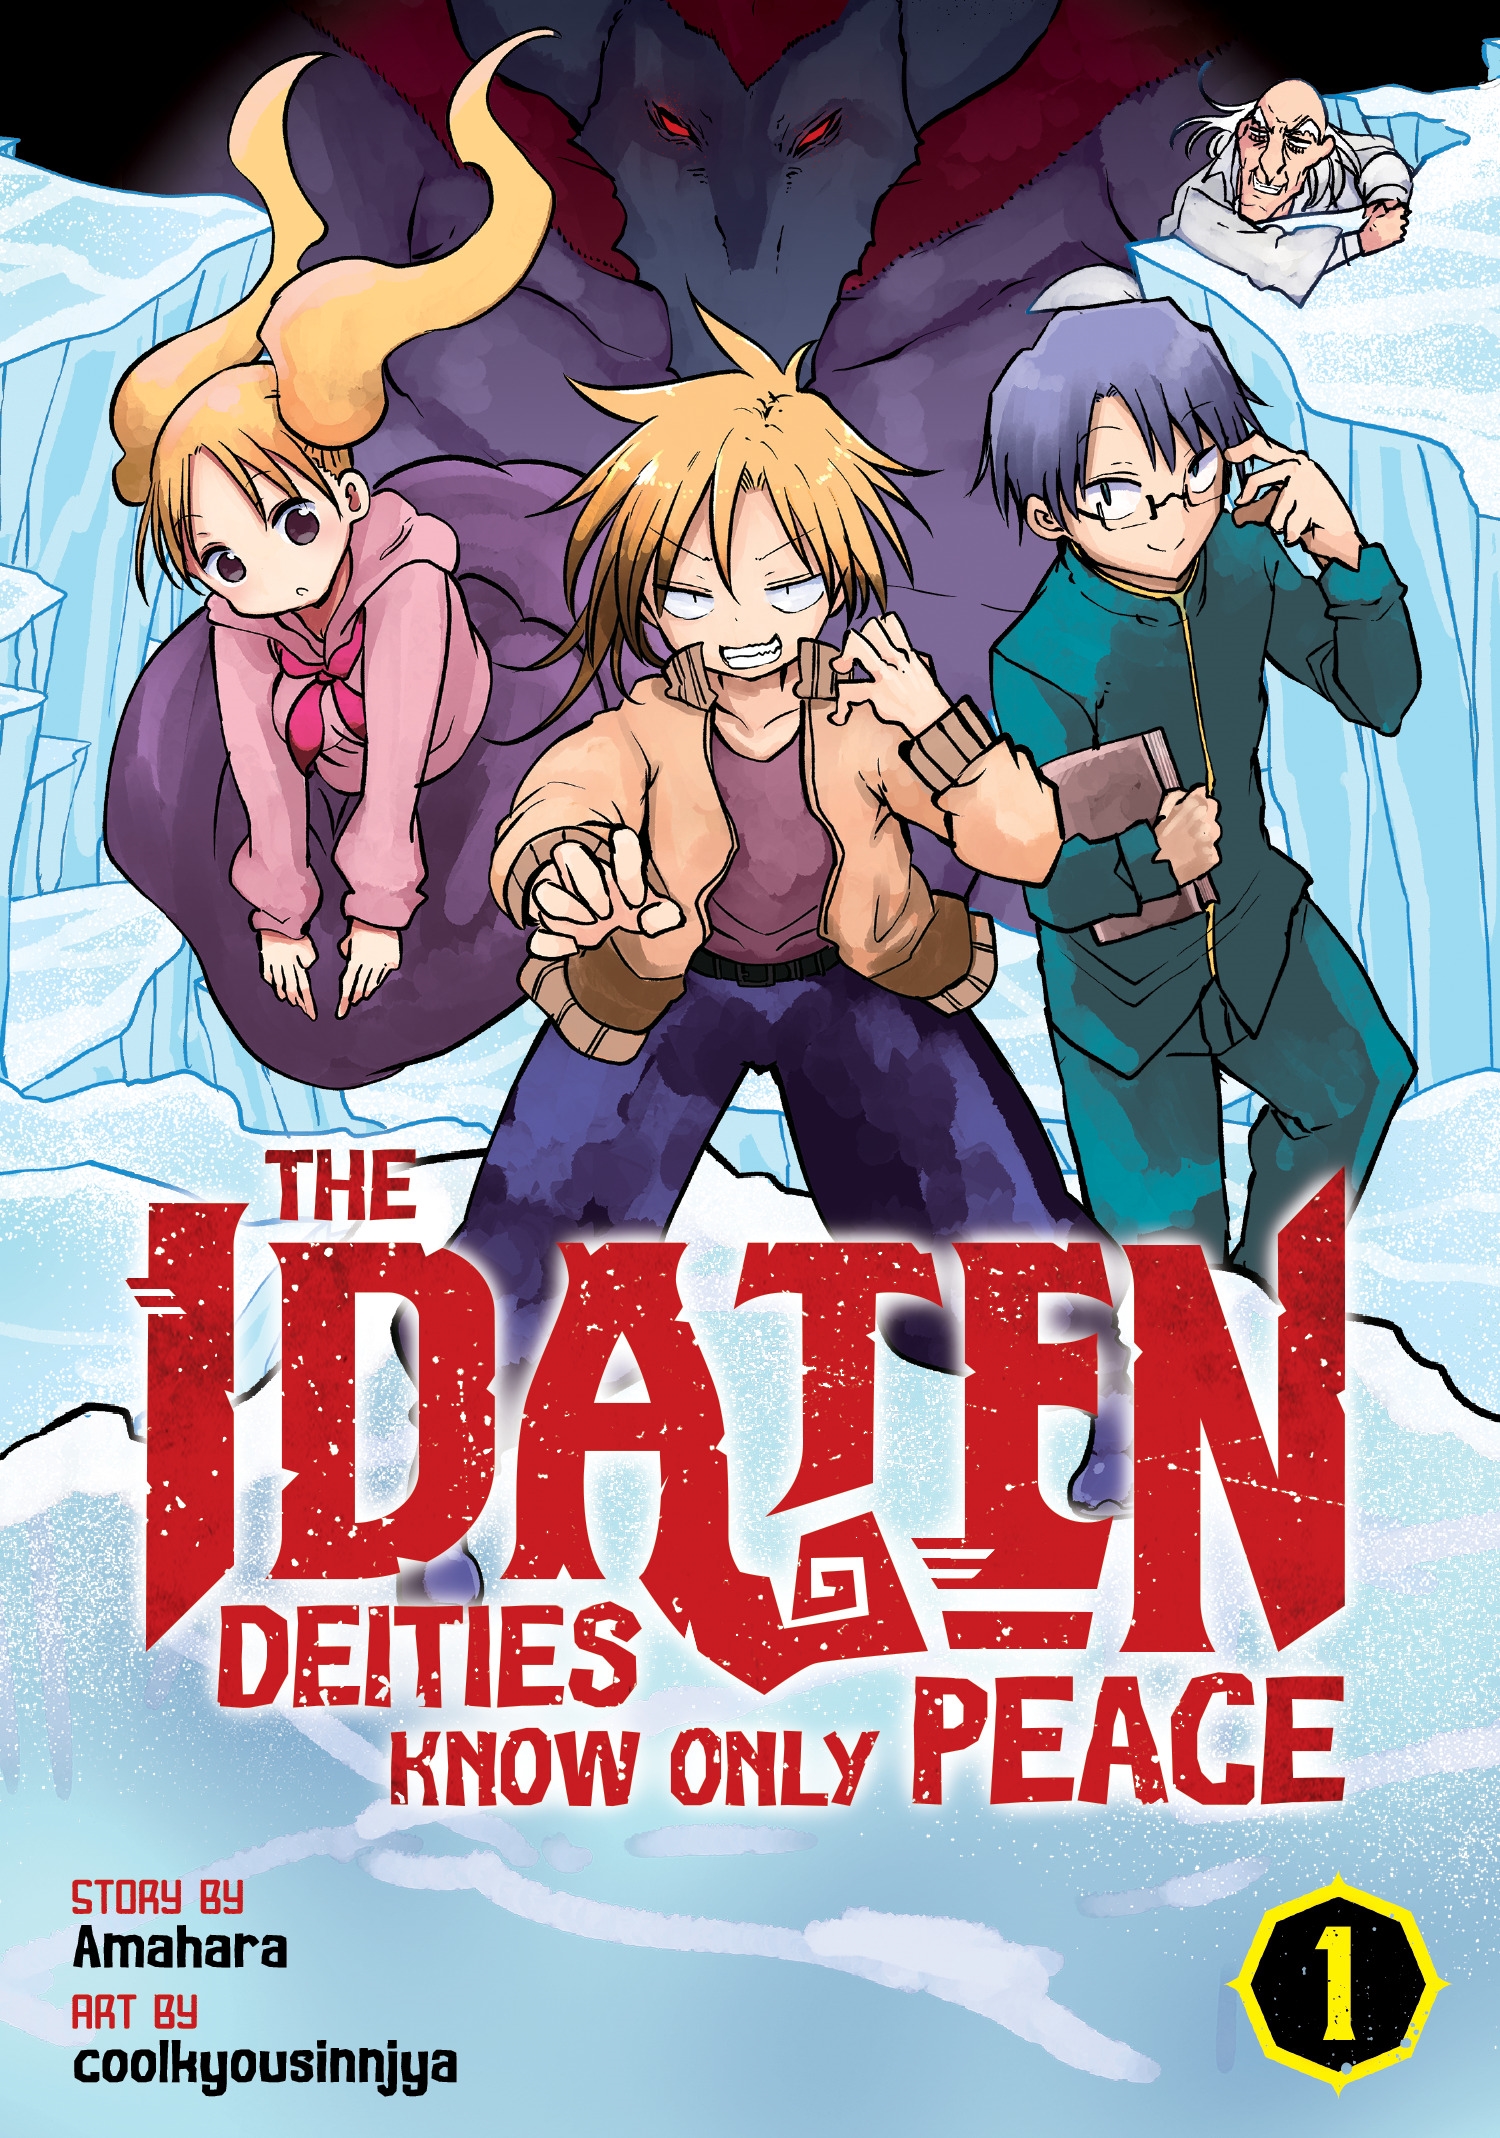 Adaptação em anime de The Idaten Deities Know Only Peace ganha novo vídeo  promocional com prévia da música de abertura - Crunchyroll Notícias